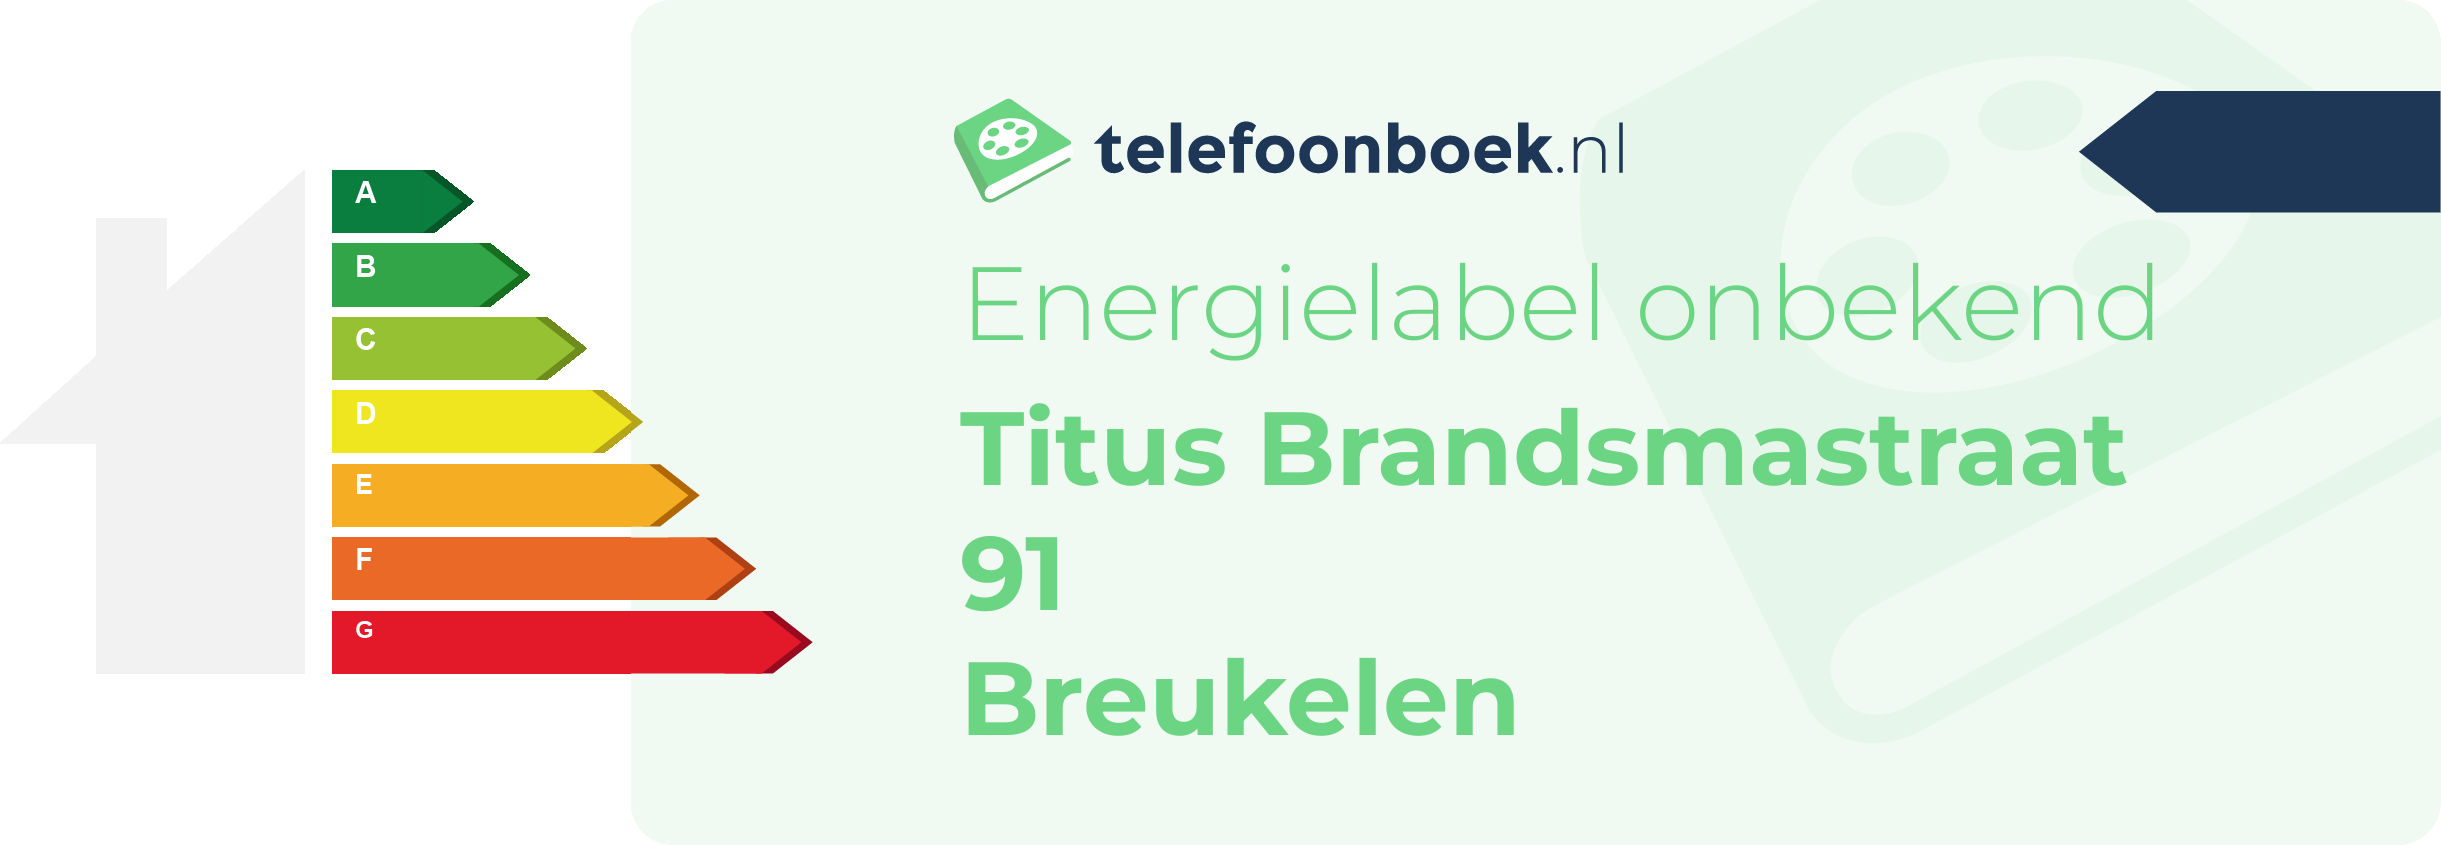 Energielabel Titus Brandsmastraat 91 Breukelen